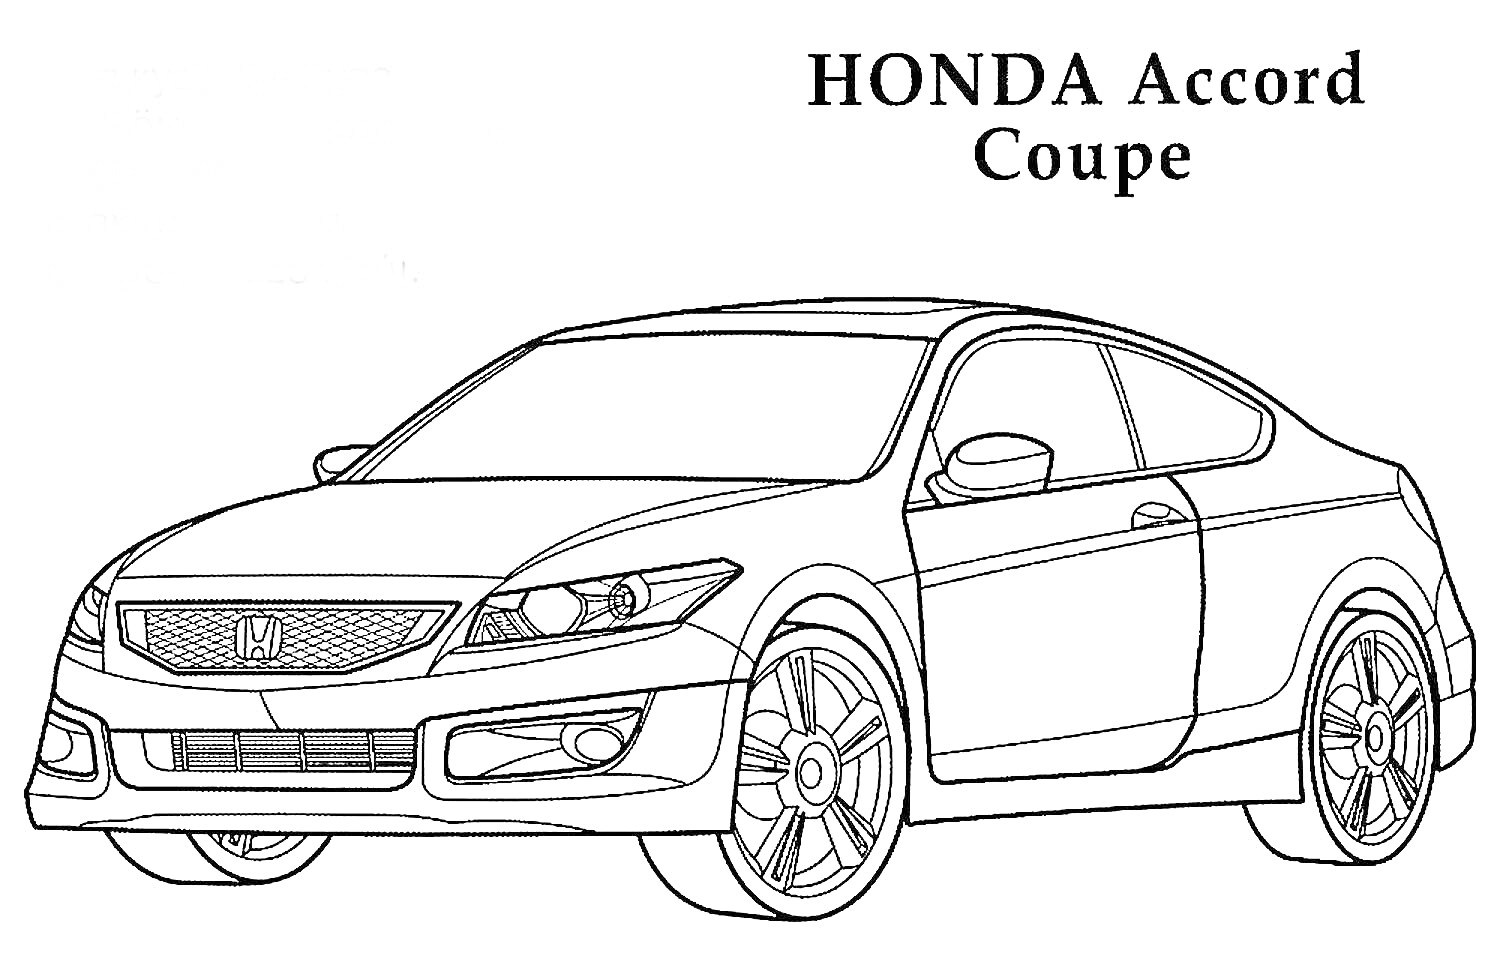 Раскраска HONDA Accord Coupe с передними и задними фарами, передней решеткой радиатора, капотом, боковыми зеркалами и колесами